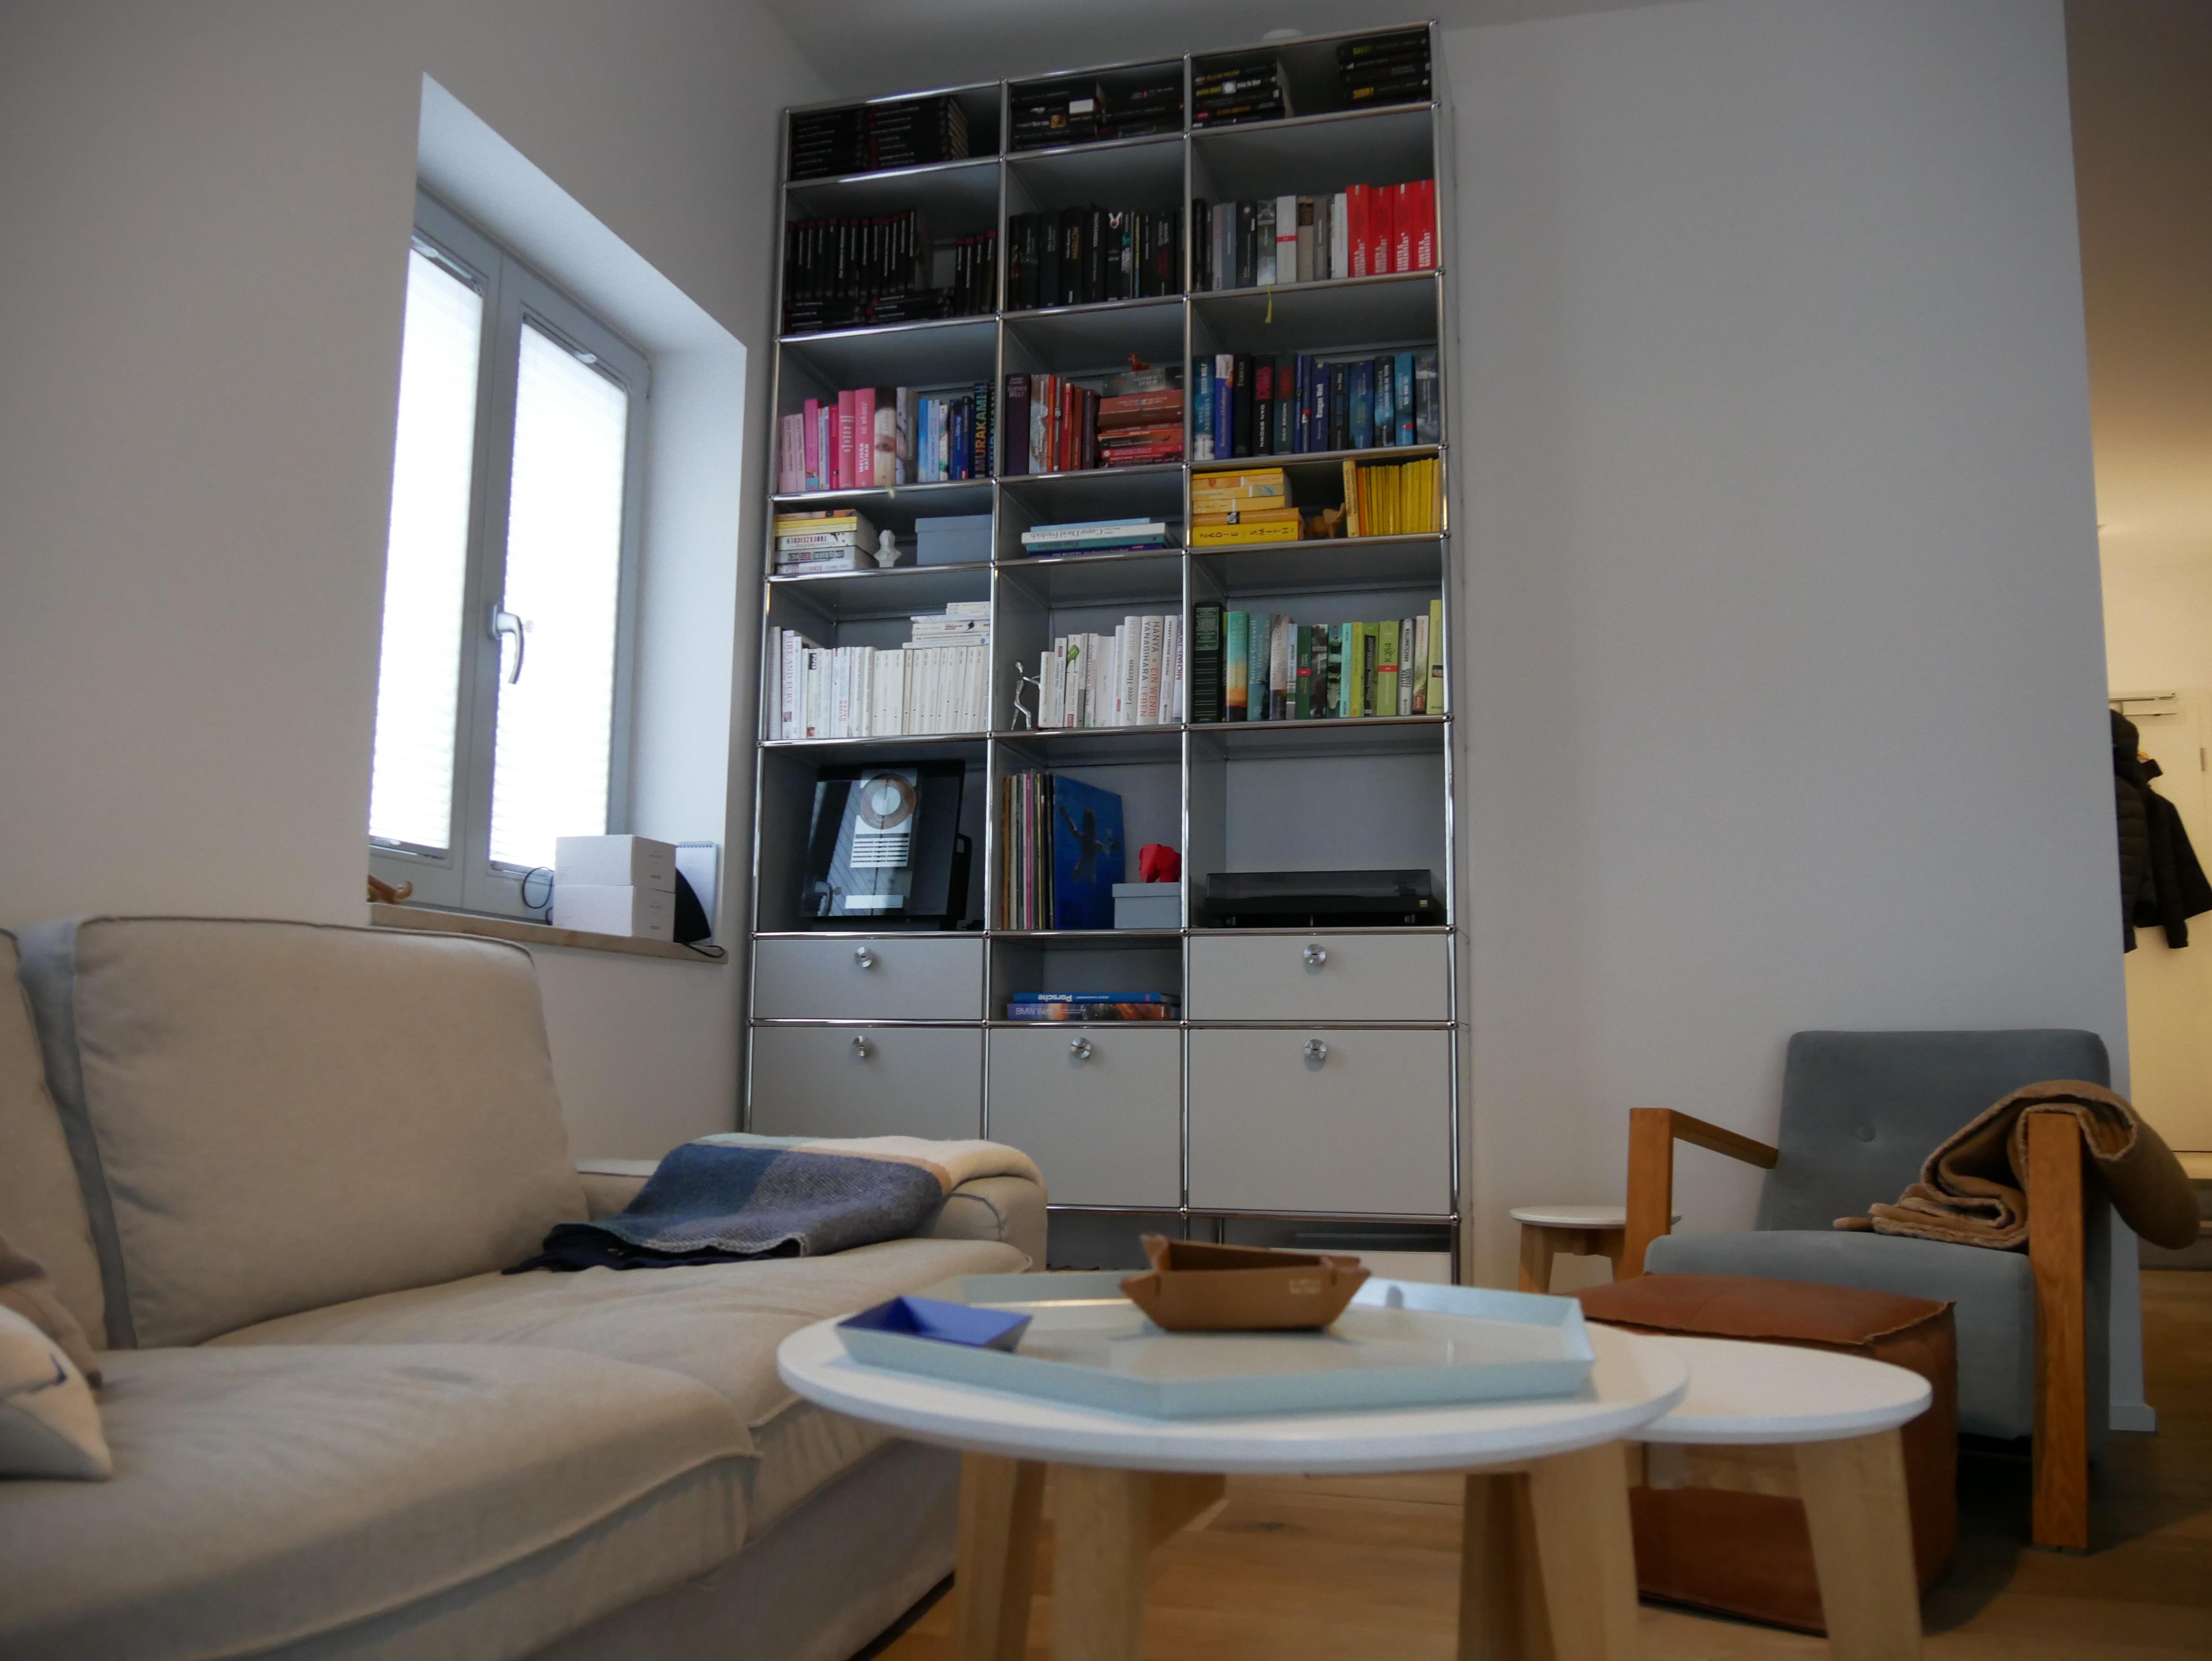 Das Herzstück unseres Wohnzimmers ist das Bücherregal. #usm #hay #wohnzimmerinspo #bücherregal #altbauliebe #tinyhome